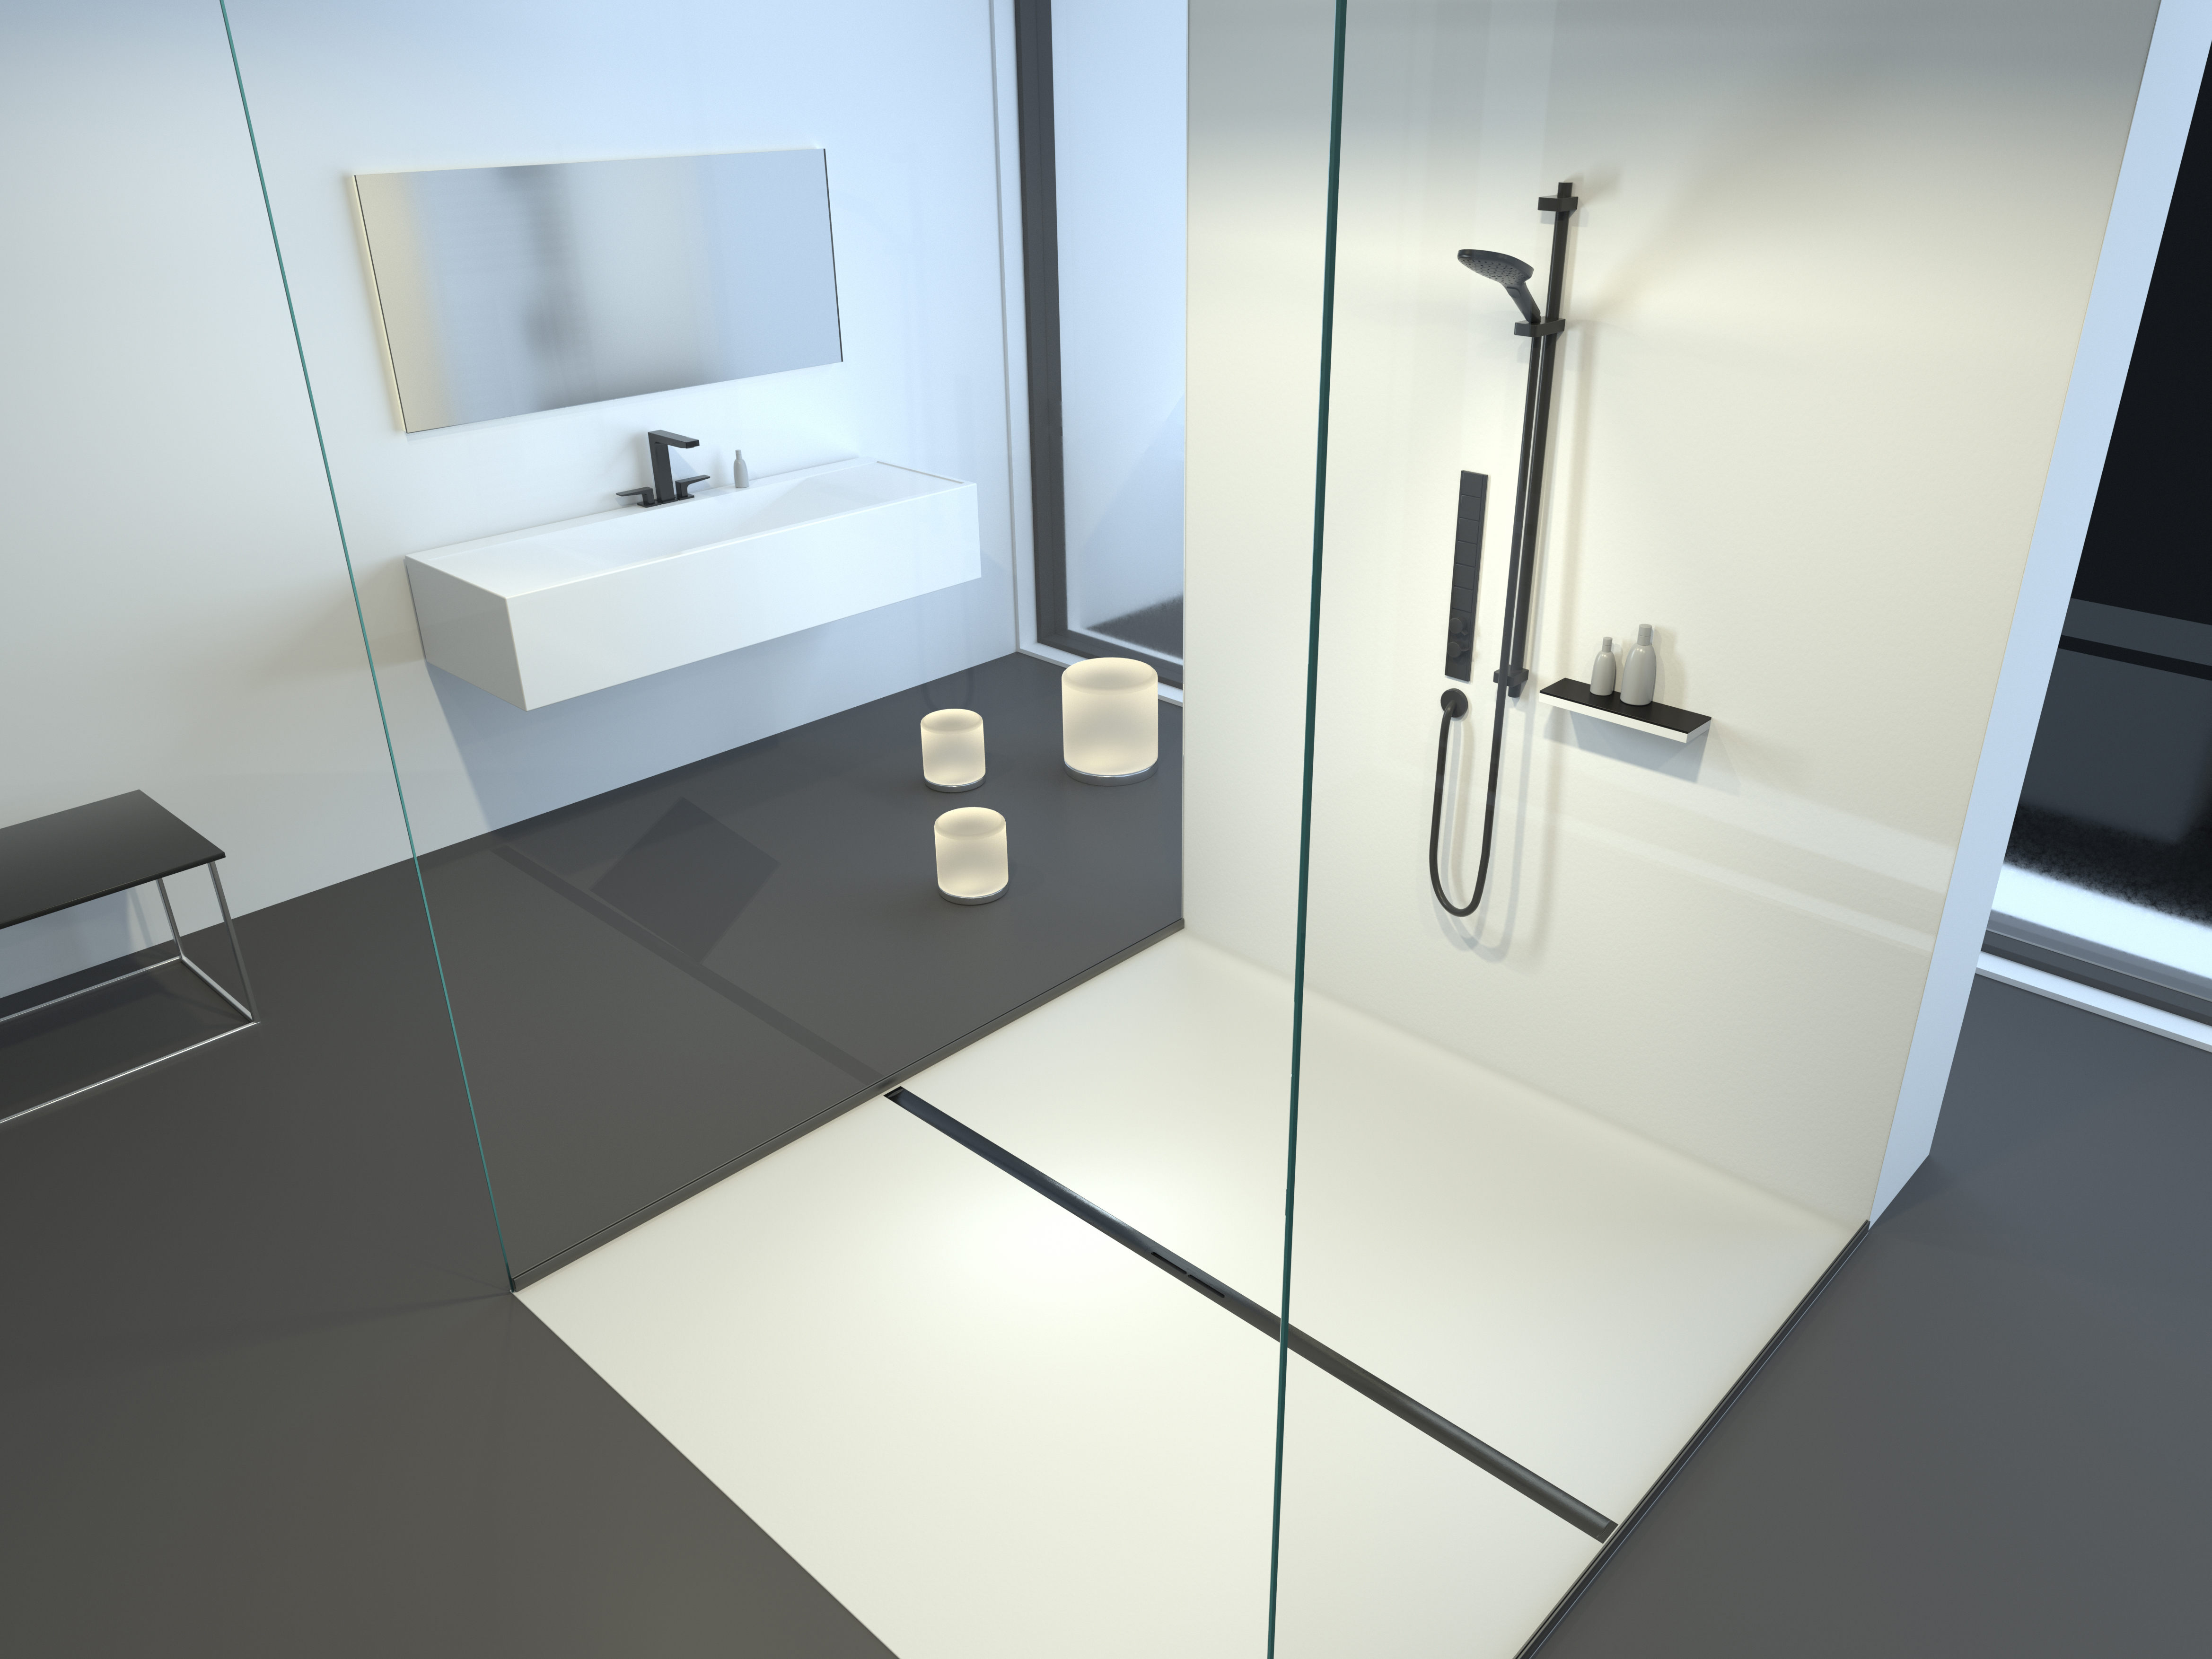 Einbaudarstellung Duschrinne Linearis Infinity, Oberfläche Black gebürstet, im Badezimmer